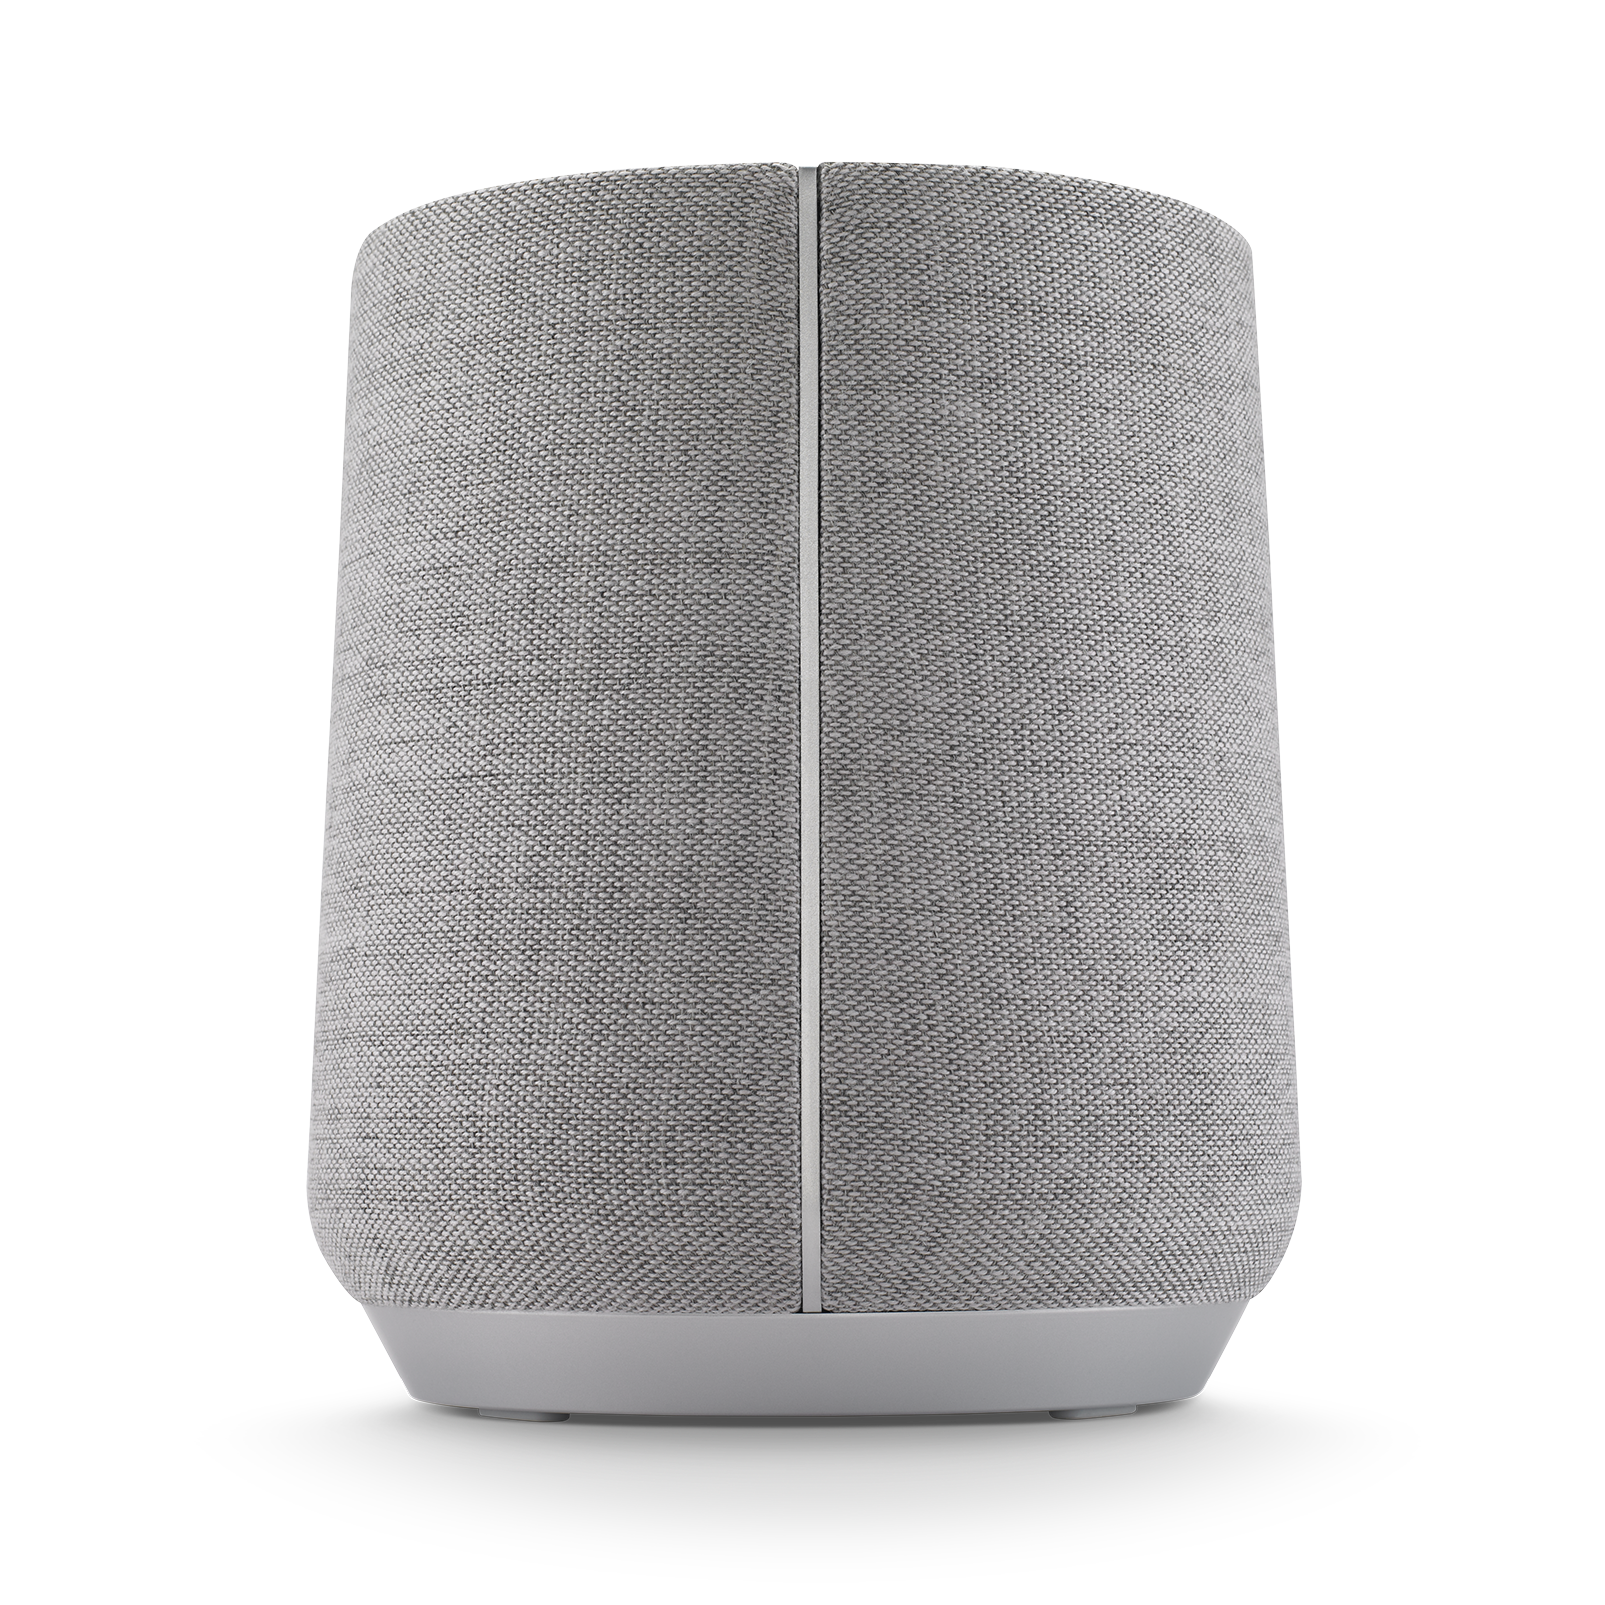 Harman Kardon Citation 500 - Grey - Large Tabletop Smart Home Loudspeaker System - Detailshot 3